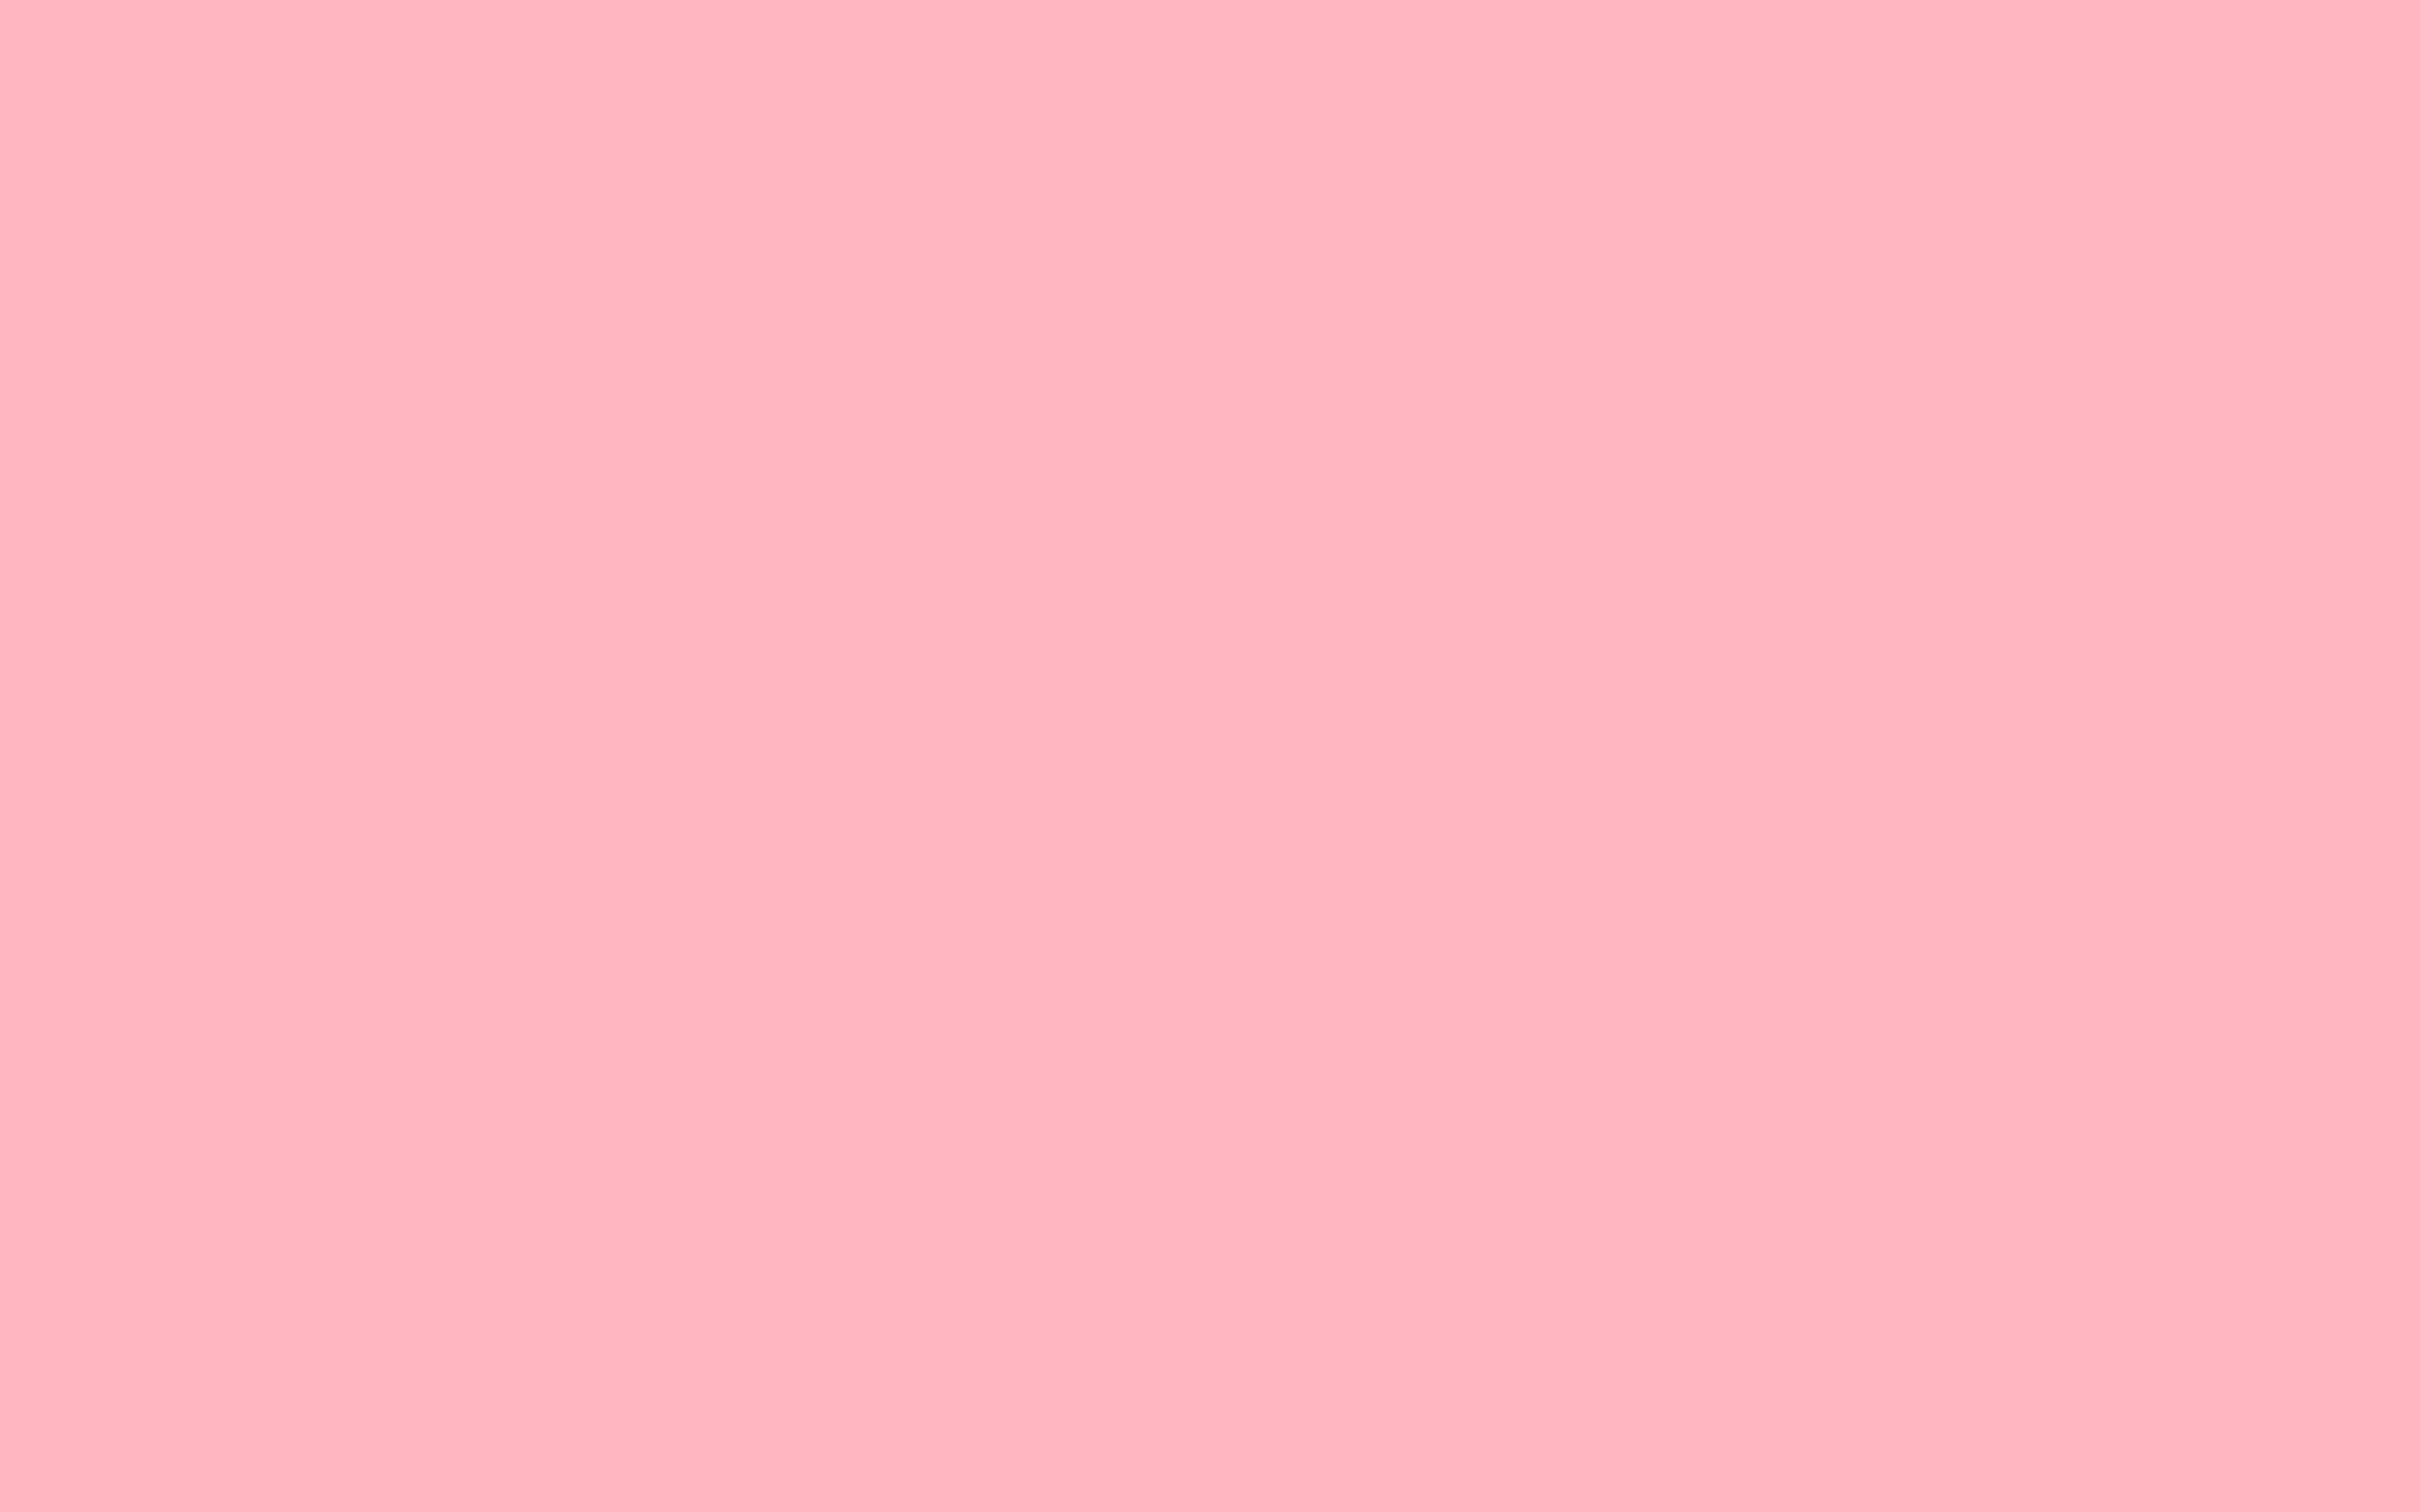 Tổng hợp 500 Cute plain pink backgrounds đẹp, miễn phí tải về